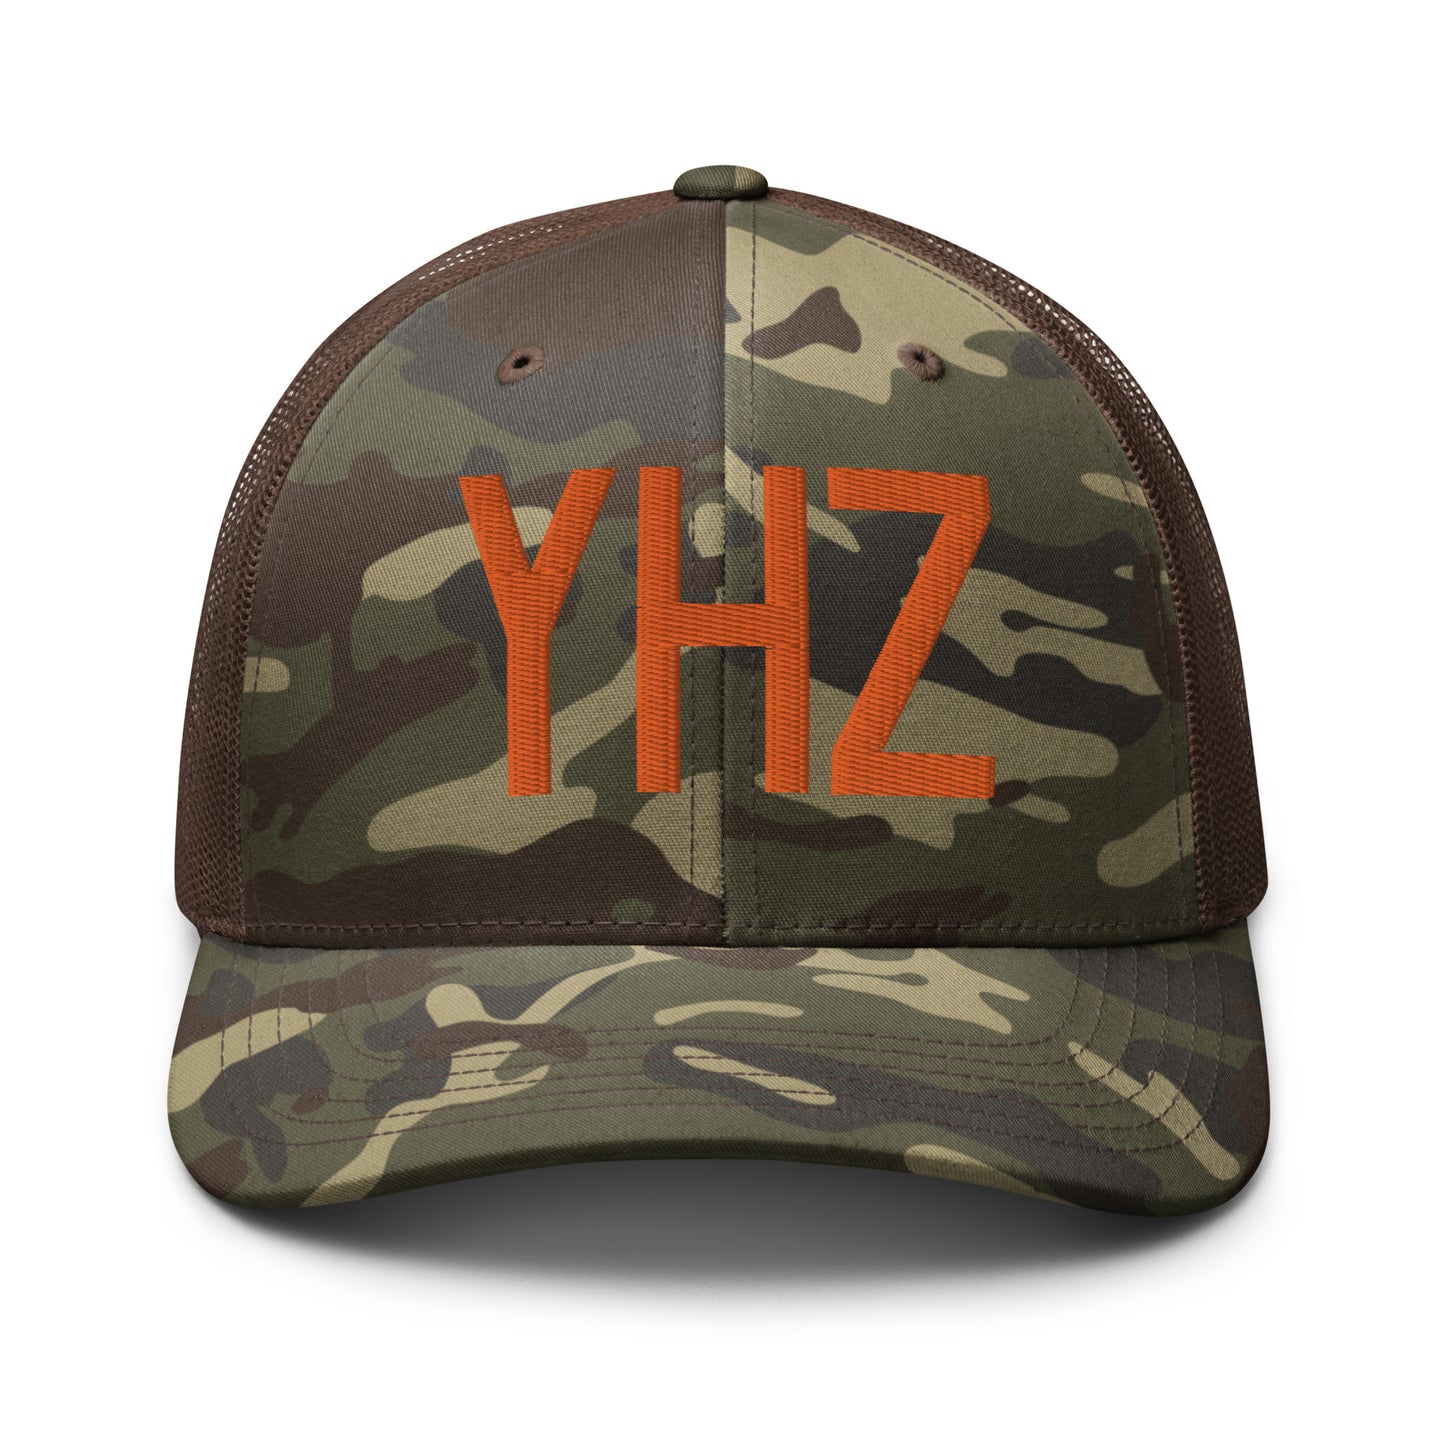 Airport Code Camouflage Trucker Hat - Orange • YHZ Halifax • YHM Designs - Image 13